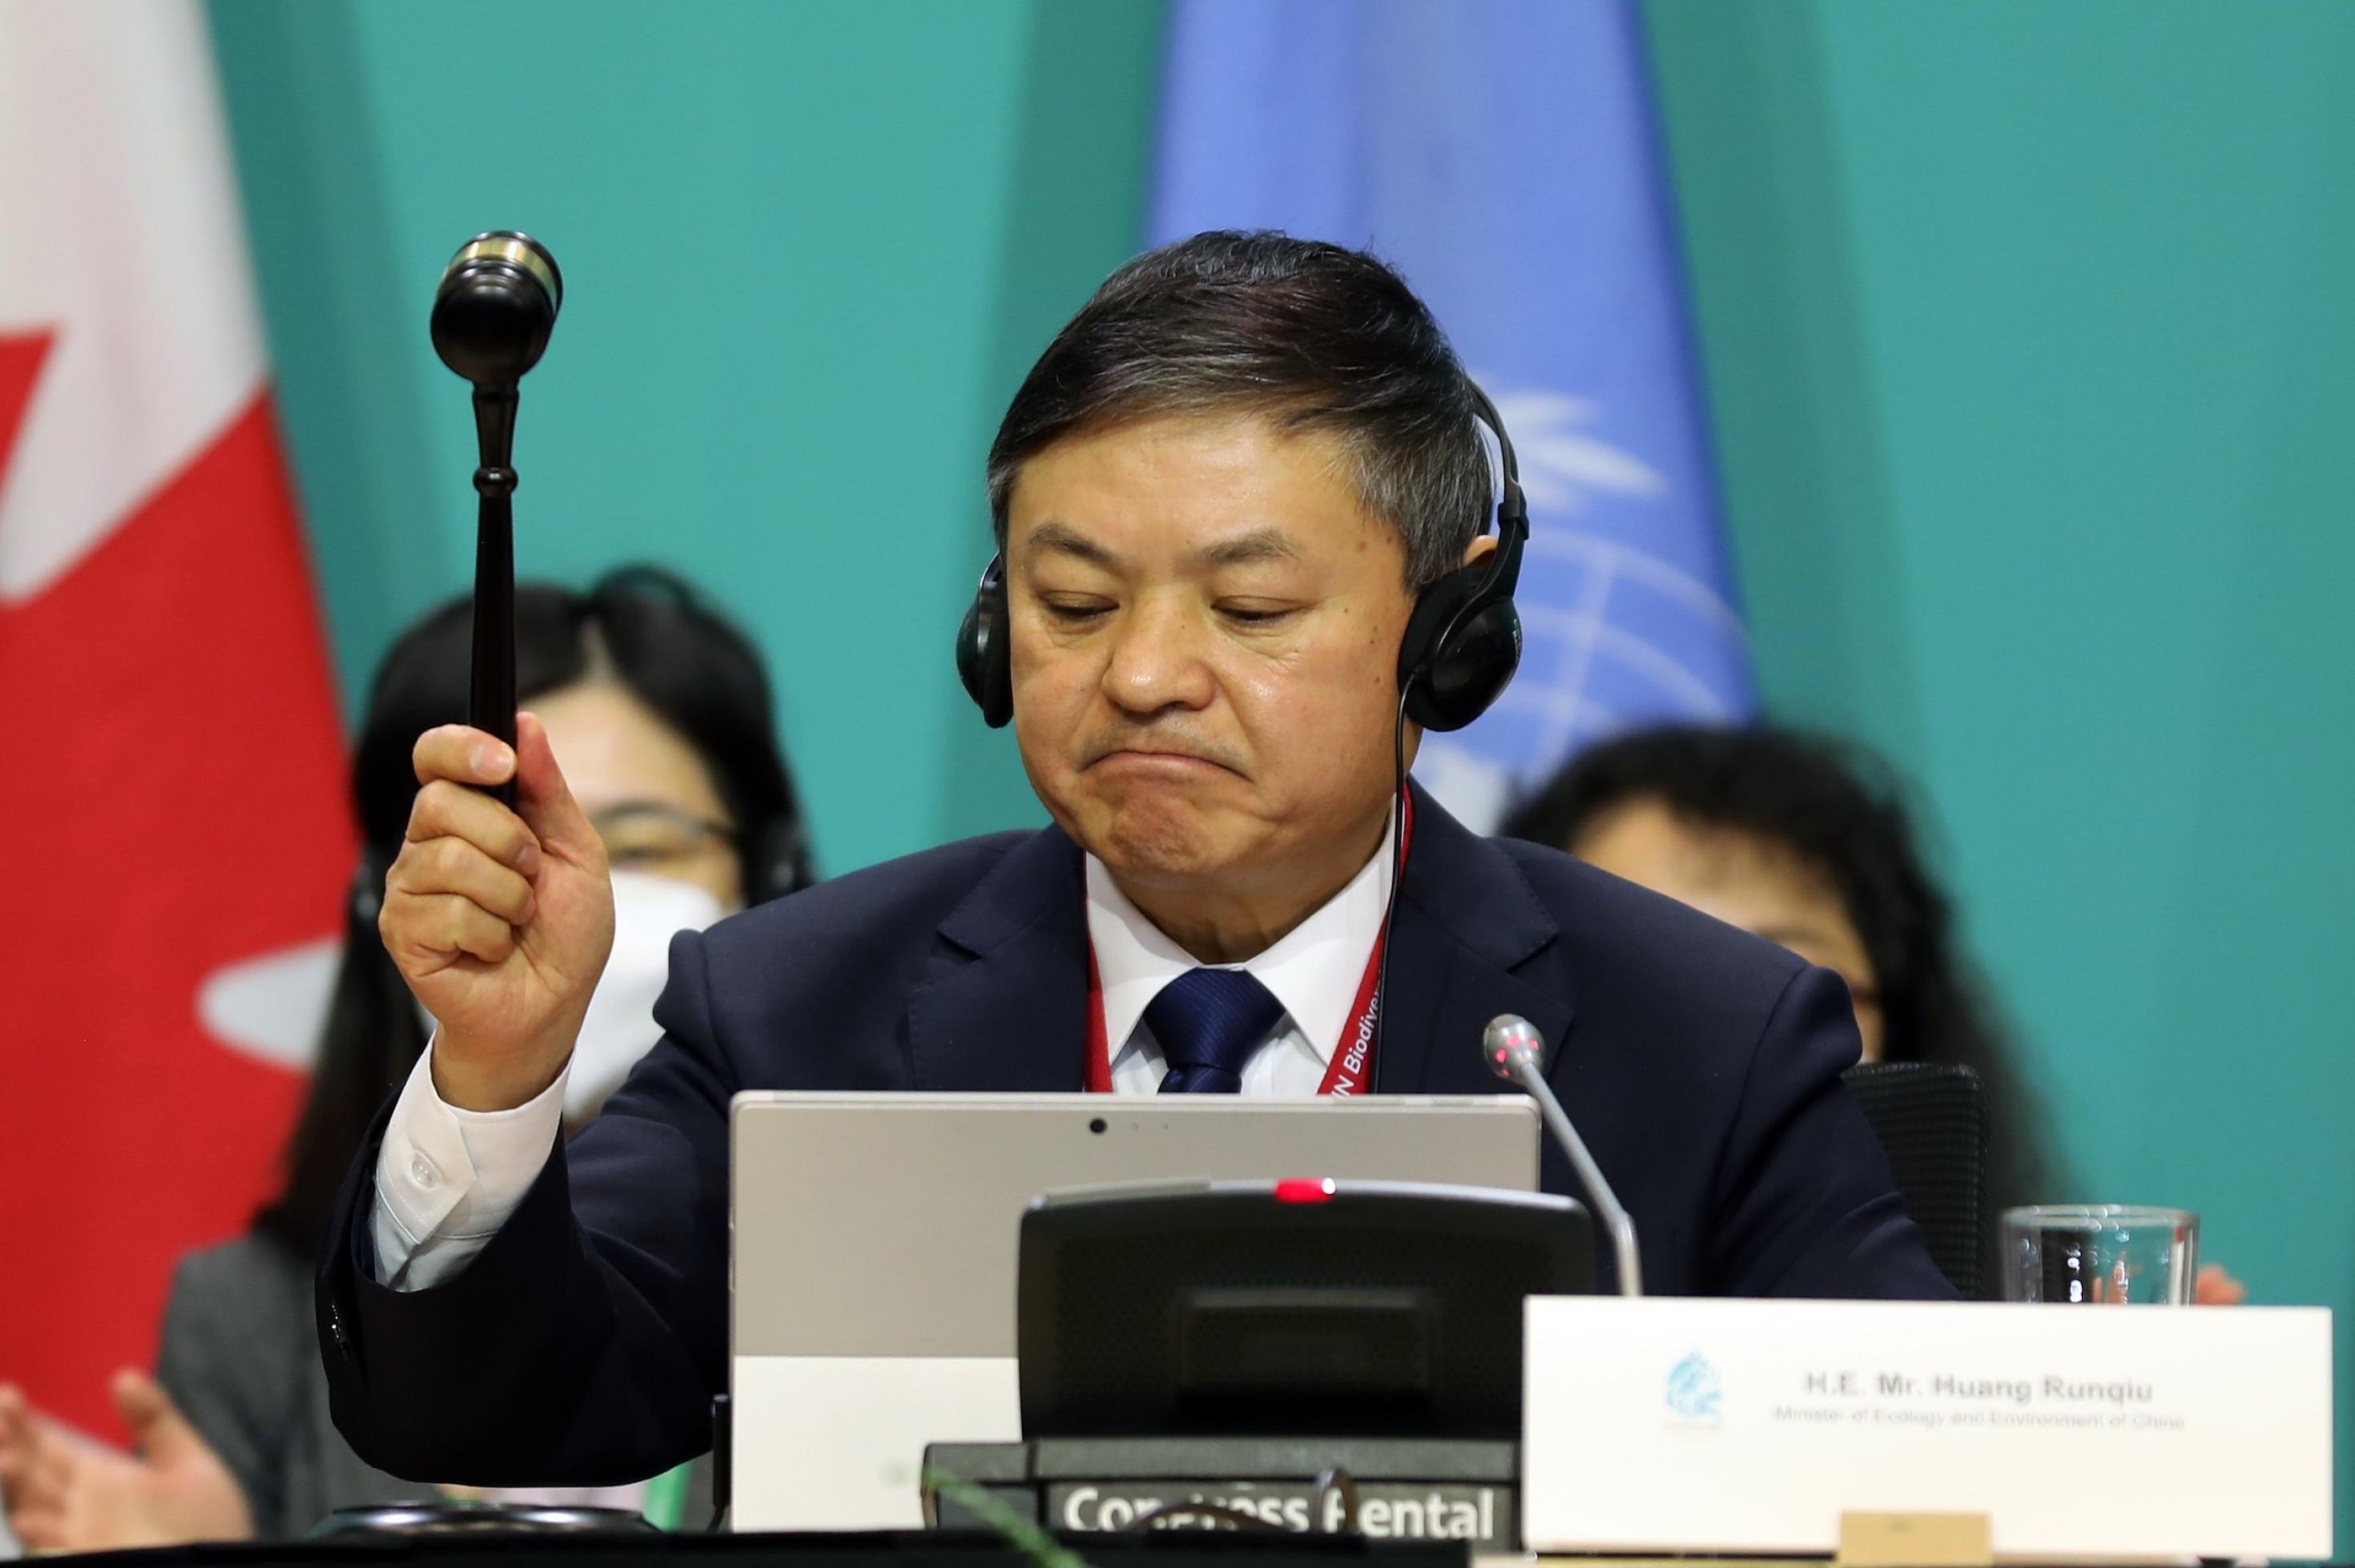 Chinese auf Podium mit Hammer in der Hand vor Fahnen der UN und Kanadas.